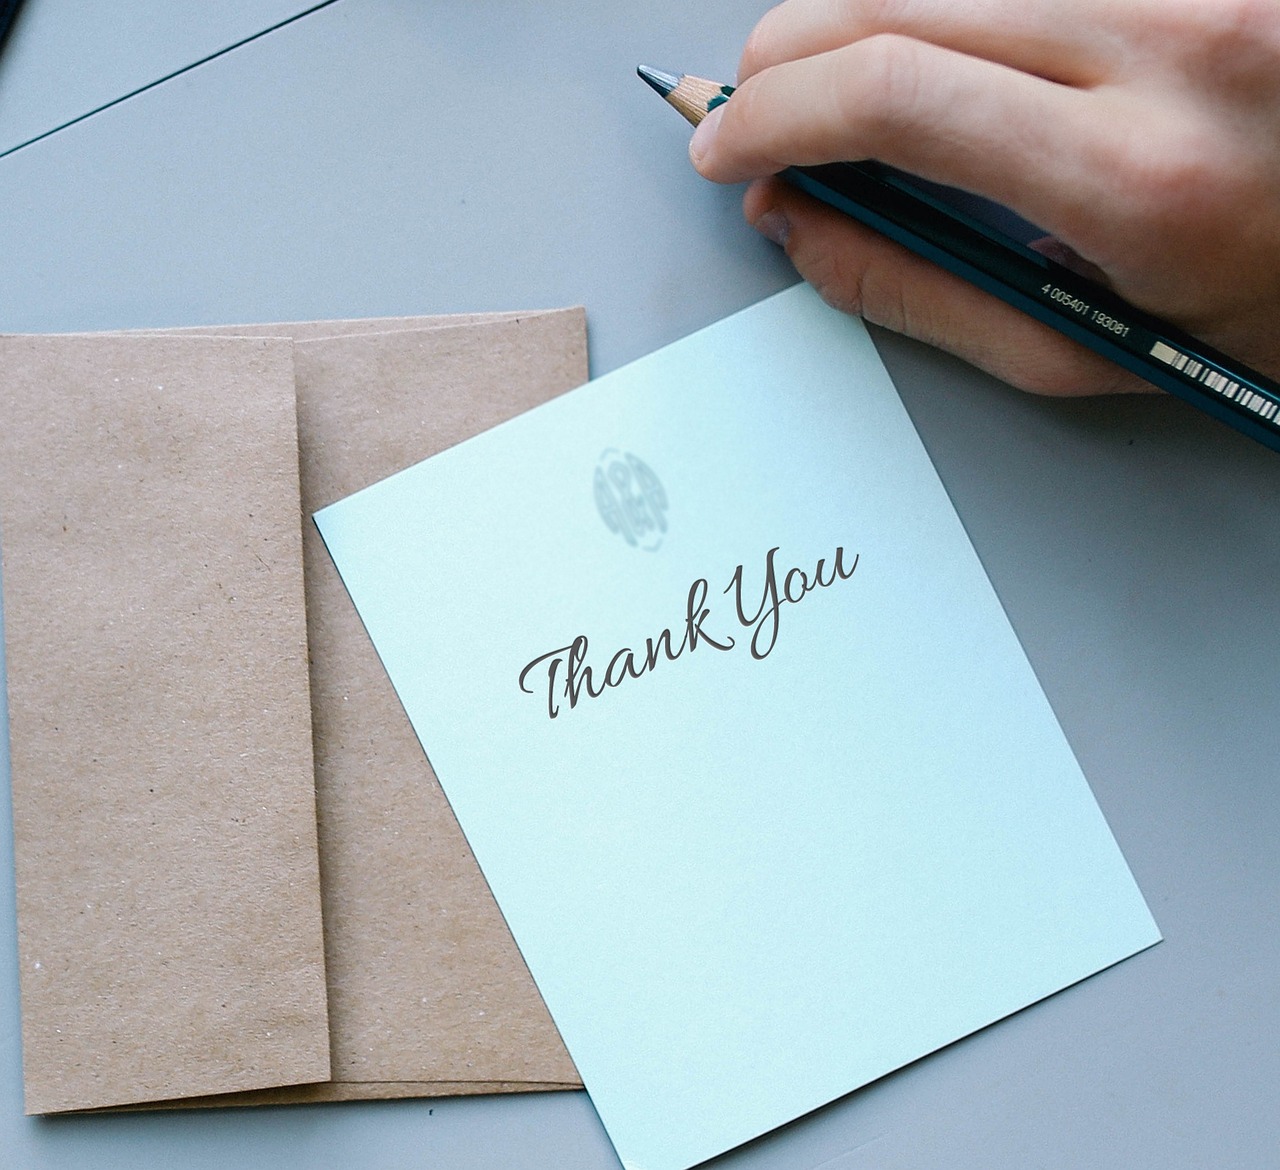 Remerciement pour un cadeau : Conseils pour exprimer votre gratitude de manière sincère et touchante